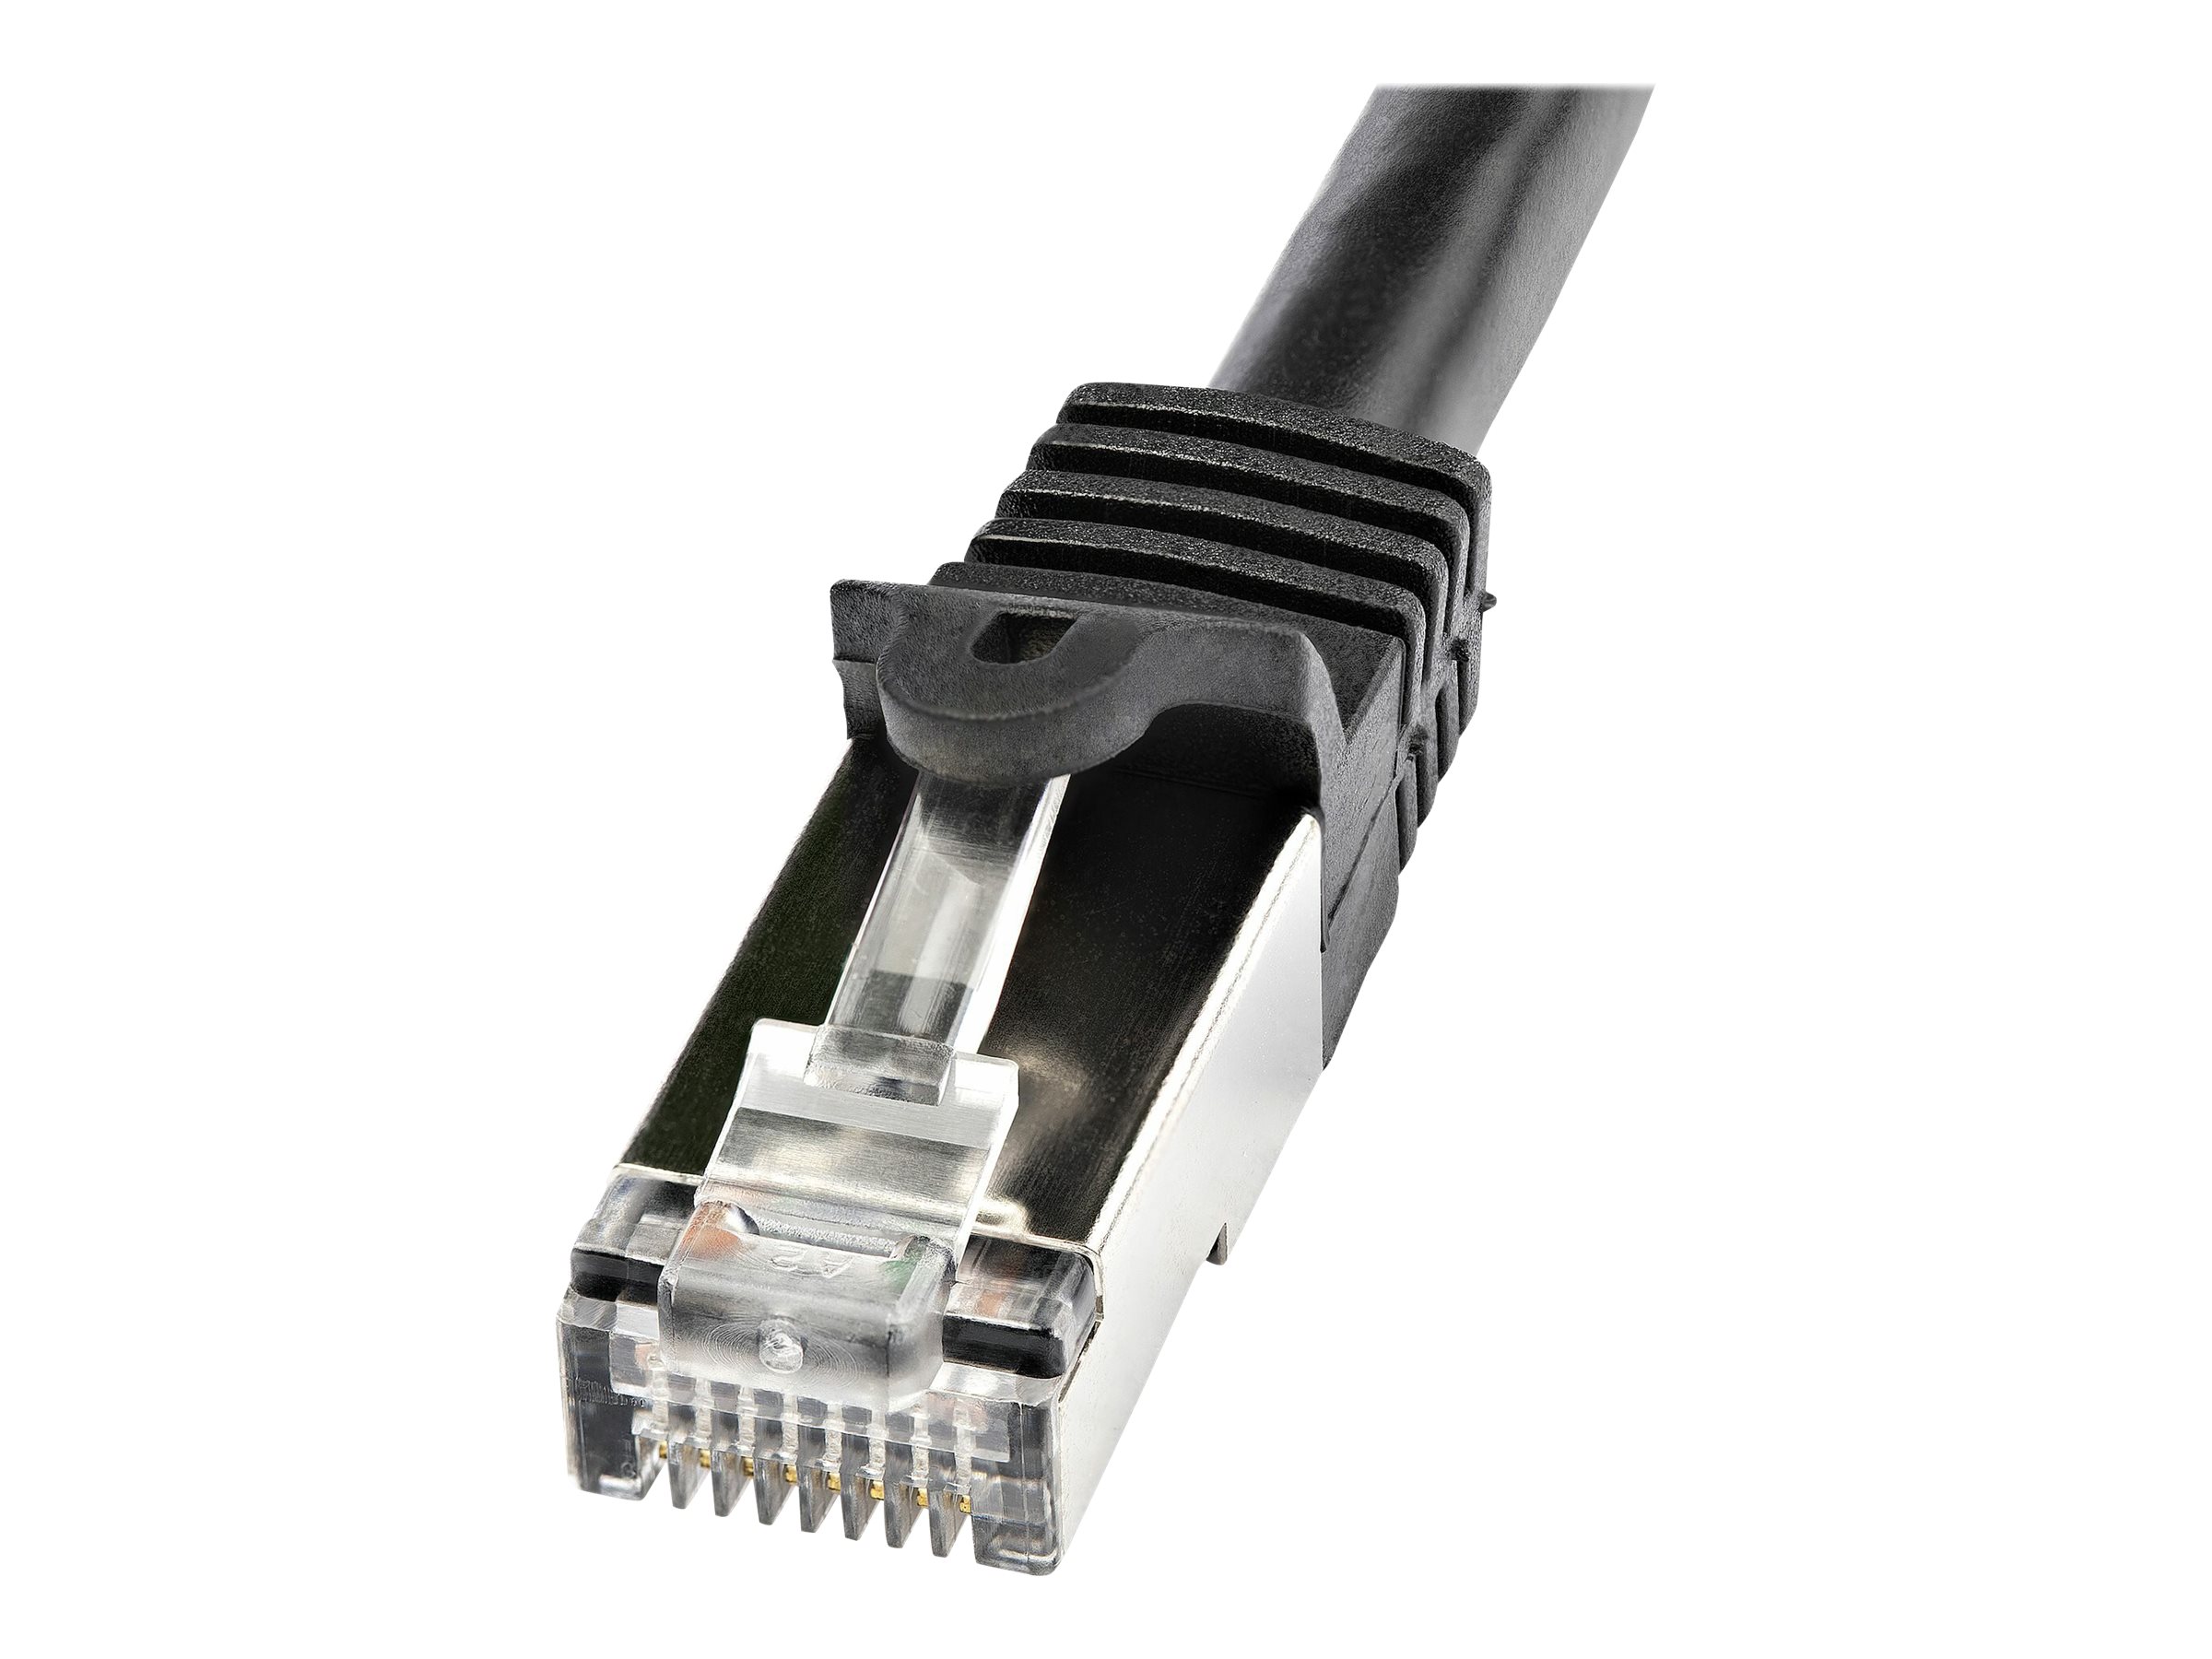 StarTech.com Câble réseau Cat6 blindé SFTP sans crochet - 1 m Noir - Cordon Ethernet RJ45 anti-accroc - Câble patch - Cordon de raccordement - RJ-45 (M) pour RJ-45 (M) - 1 m - SFTP - CAT 6 - moulé, sans crochet - noir - N6SPAT1MBK - Câbles à paire torsadée